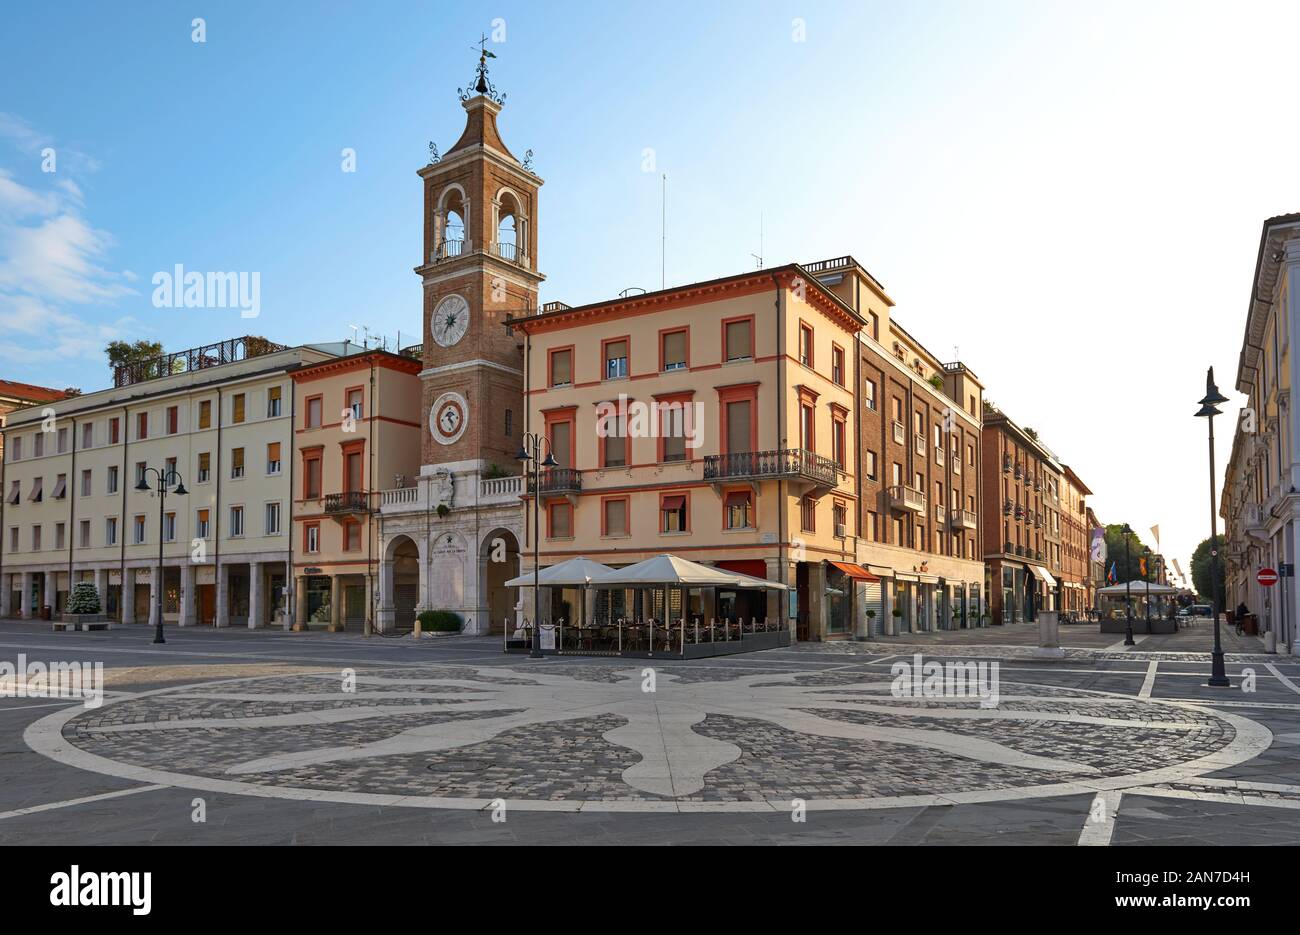 Rimini, Italia. La piazza centrale di Rimini. Piazza Tre Martiri a Rimini con l'antica torre dell'orologio. Foto Stock